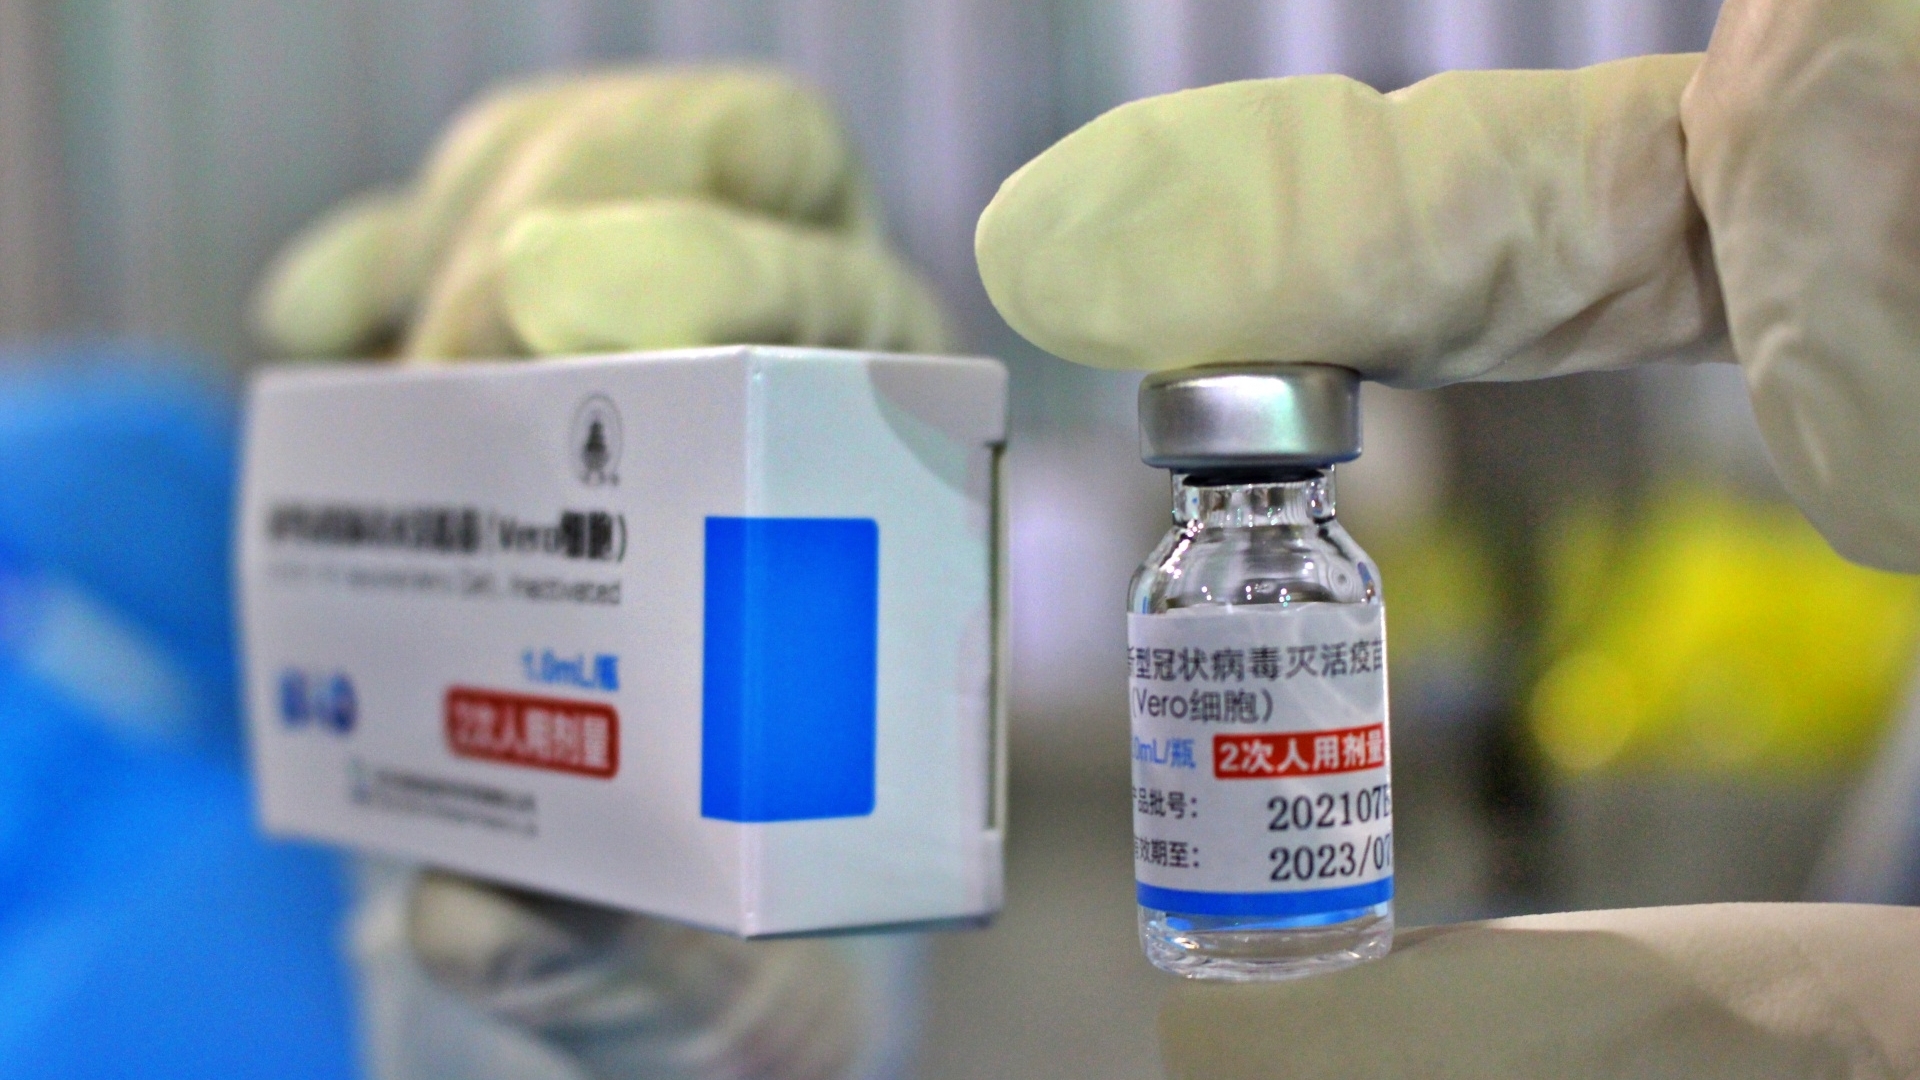 胡志明市已注射超过20万剂Vero-cell疫苗  一切安全